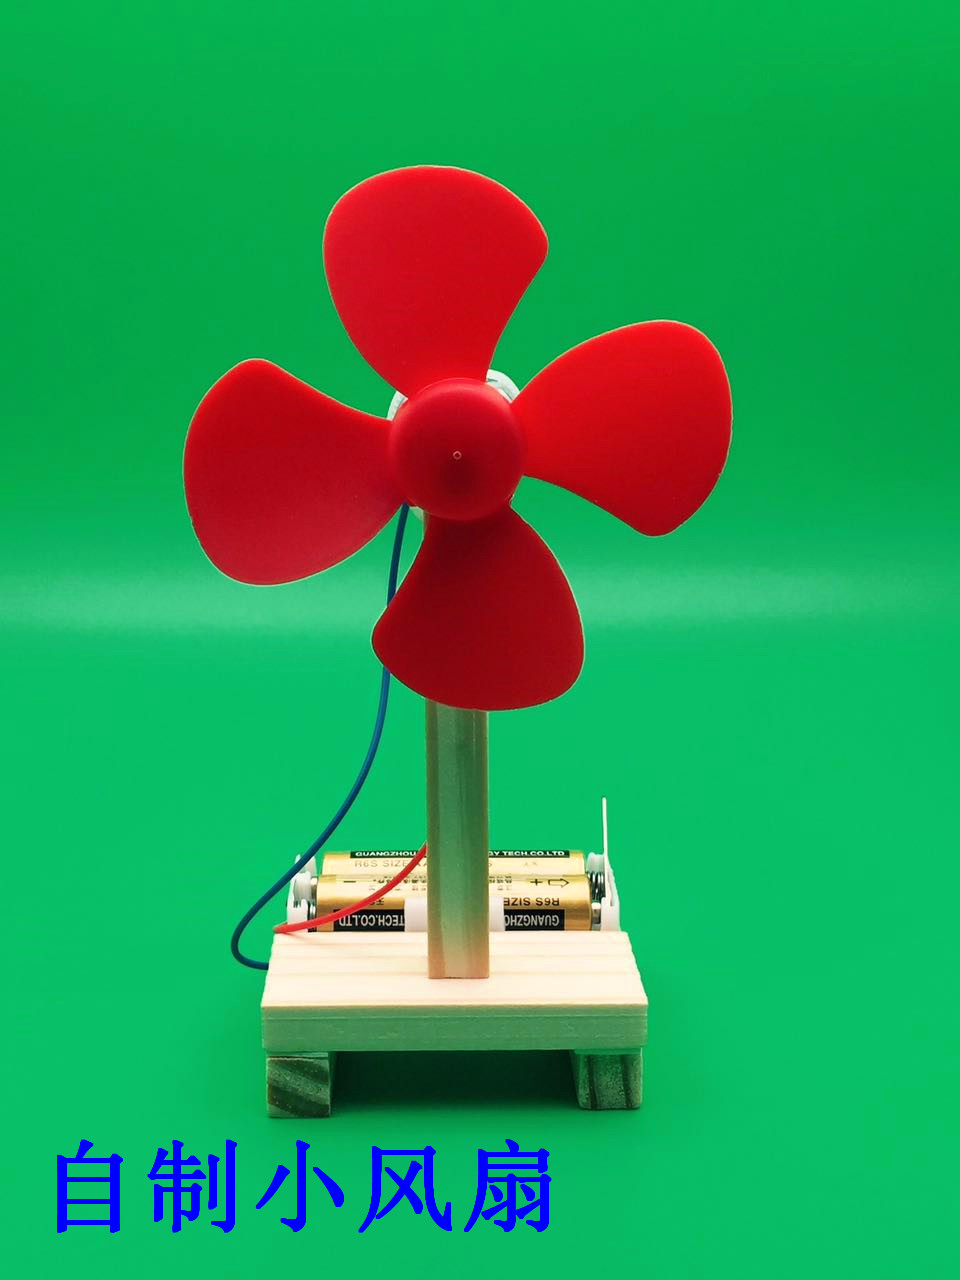 创意红绿灯小学生科学实验玩具儿童手工diy材料科技小制作小发明 已售